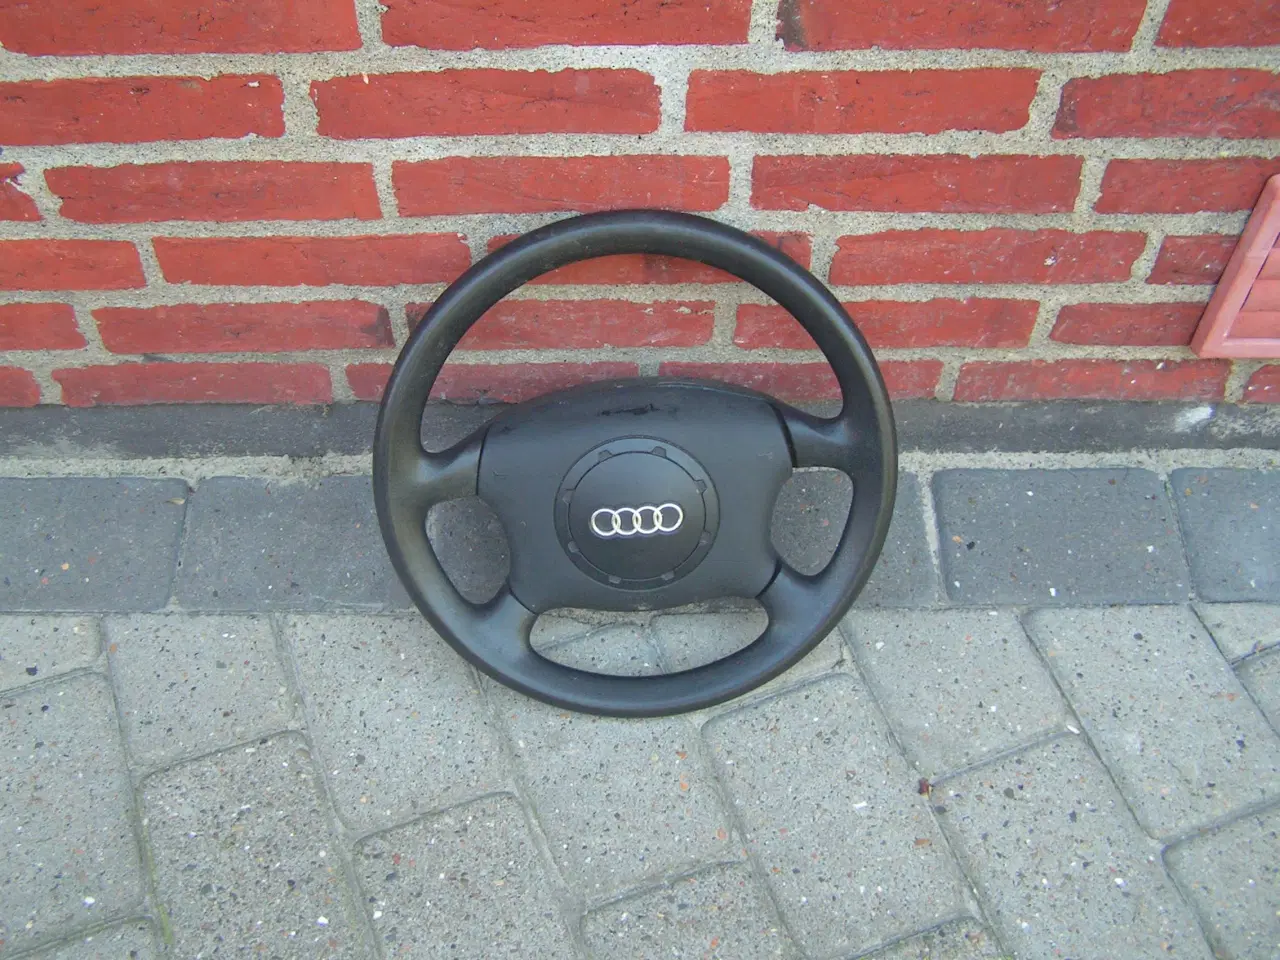 Billede 1 - Audi rat med airbag.